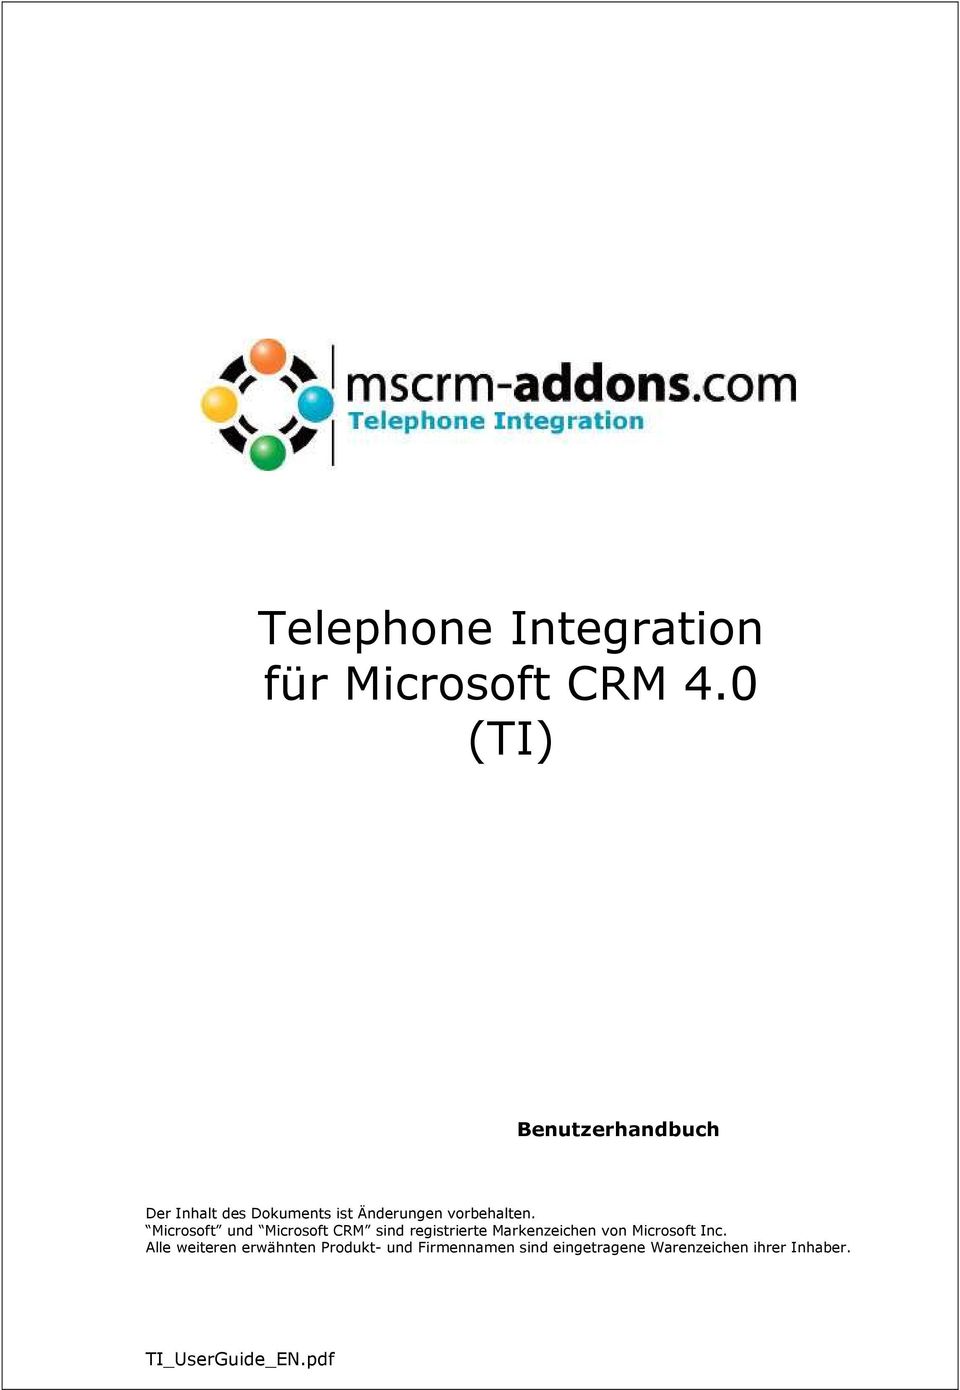 Microsoft und Microsoft CRM sind registrierte Markenzeichen von Microsoft Inc.